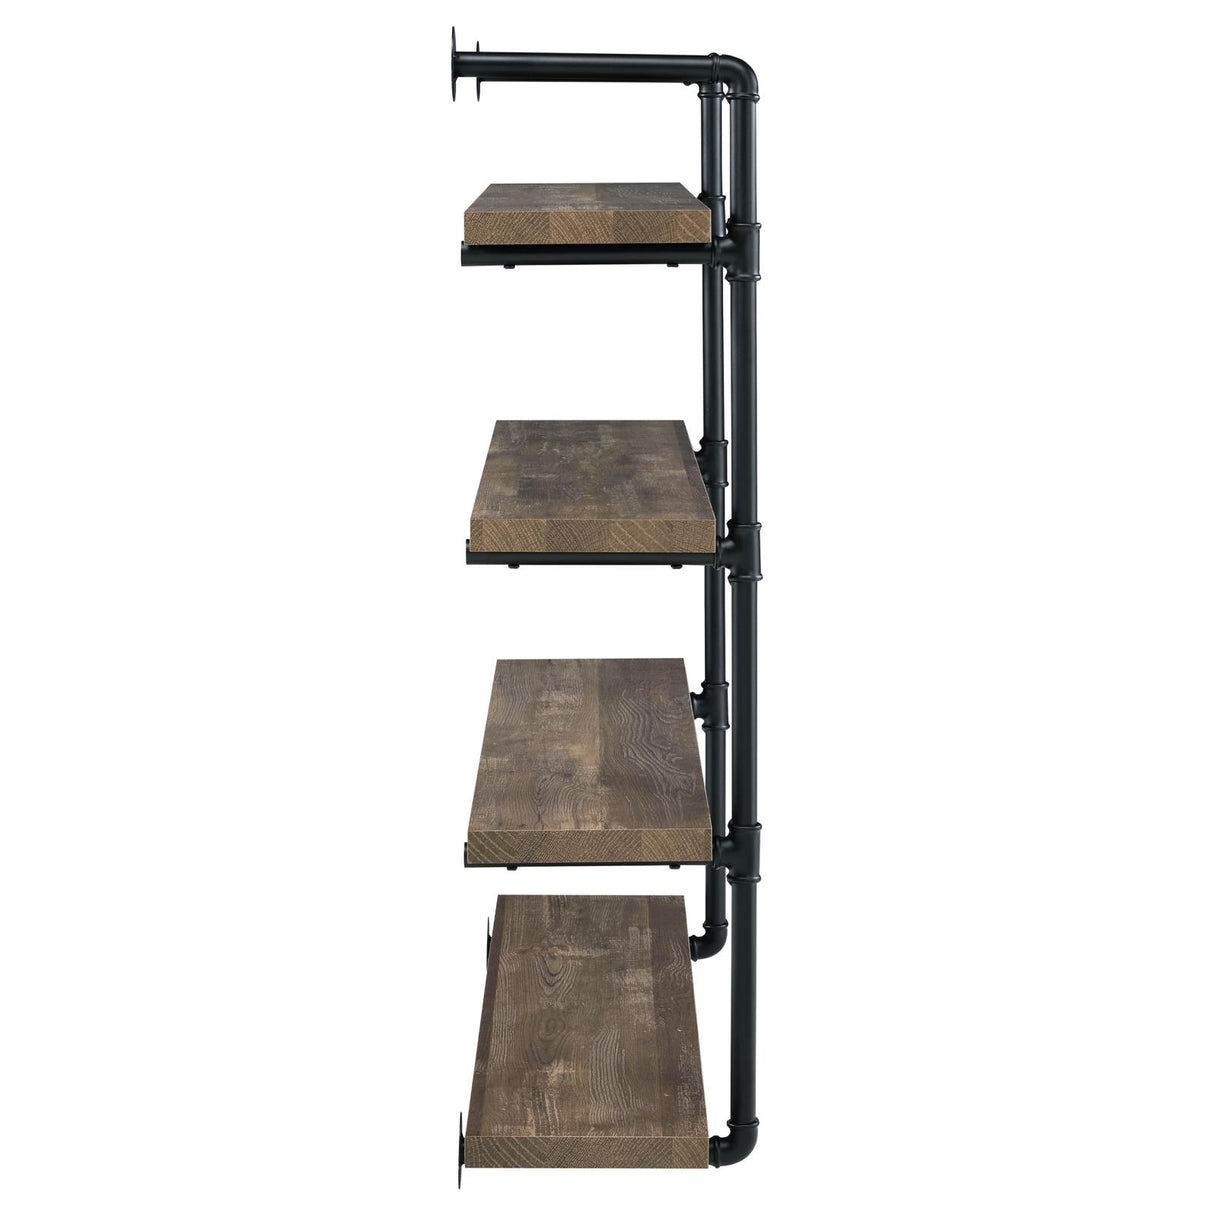 Elmcrest 40-inch Wall Shelf Black and Rustic Oak - 804417 - Luna Furniture